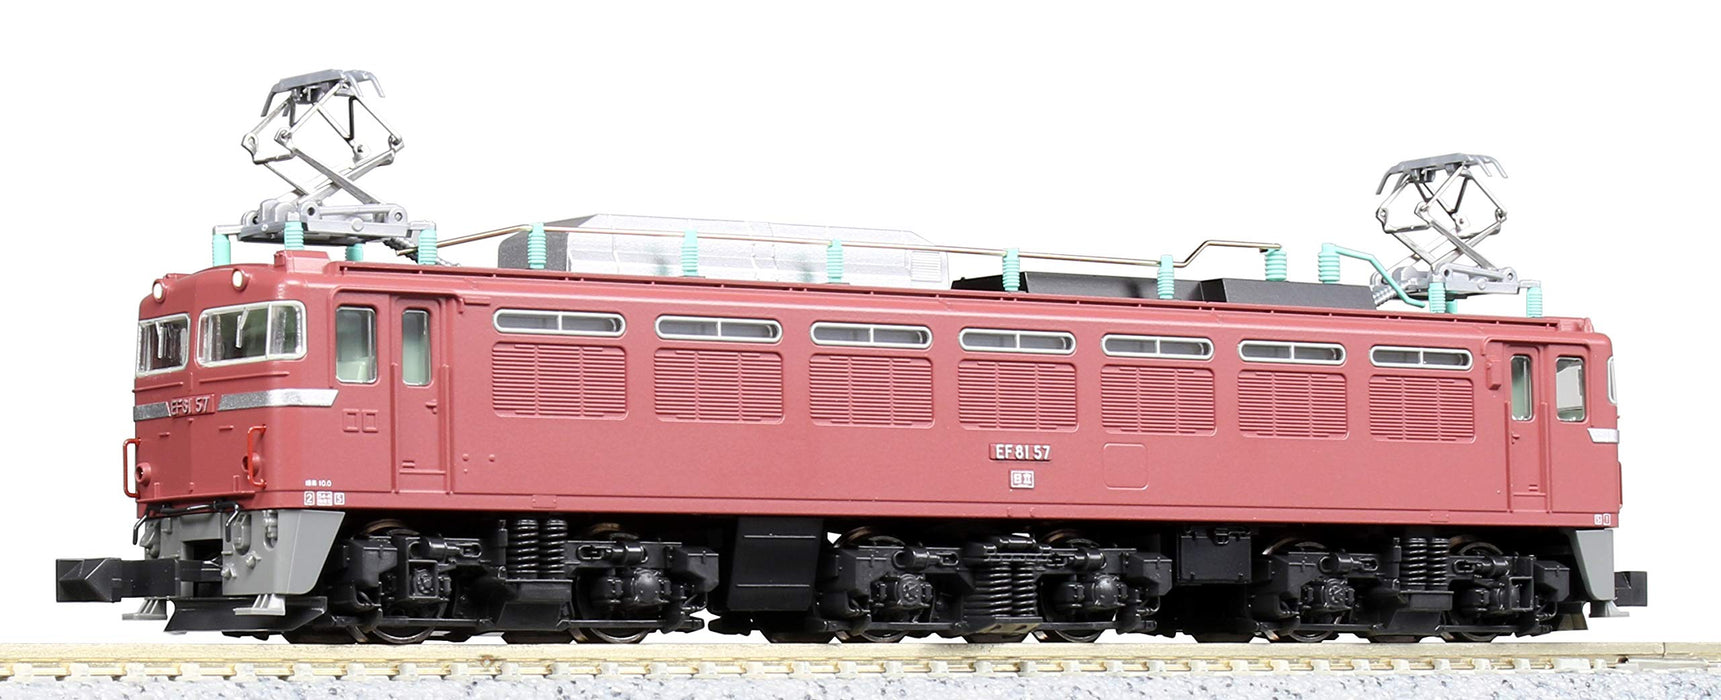 Modèle de locomotive électrique Kato N Gauge 3066-1 - Couleur générale Ef81